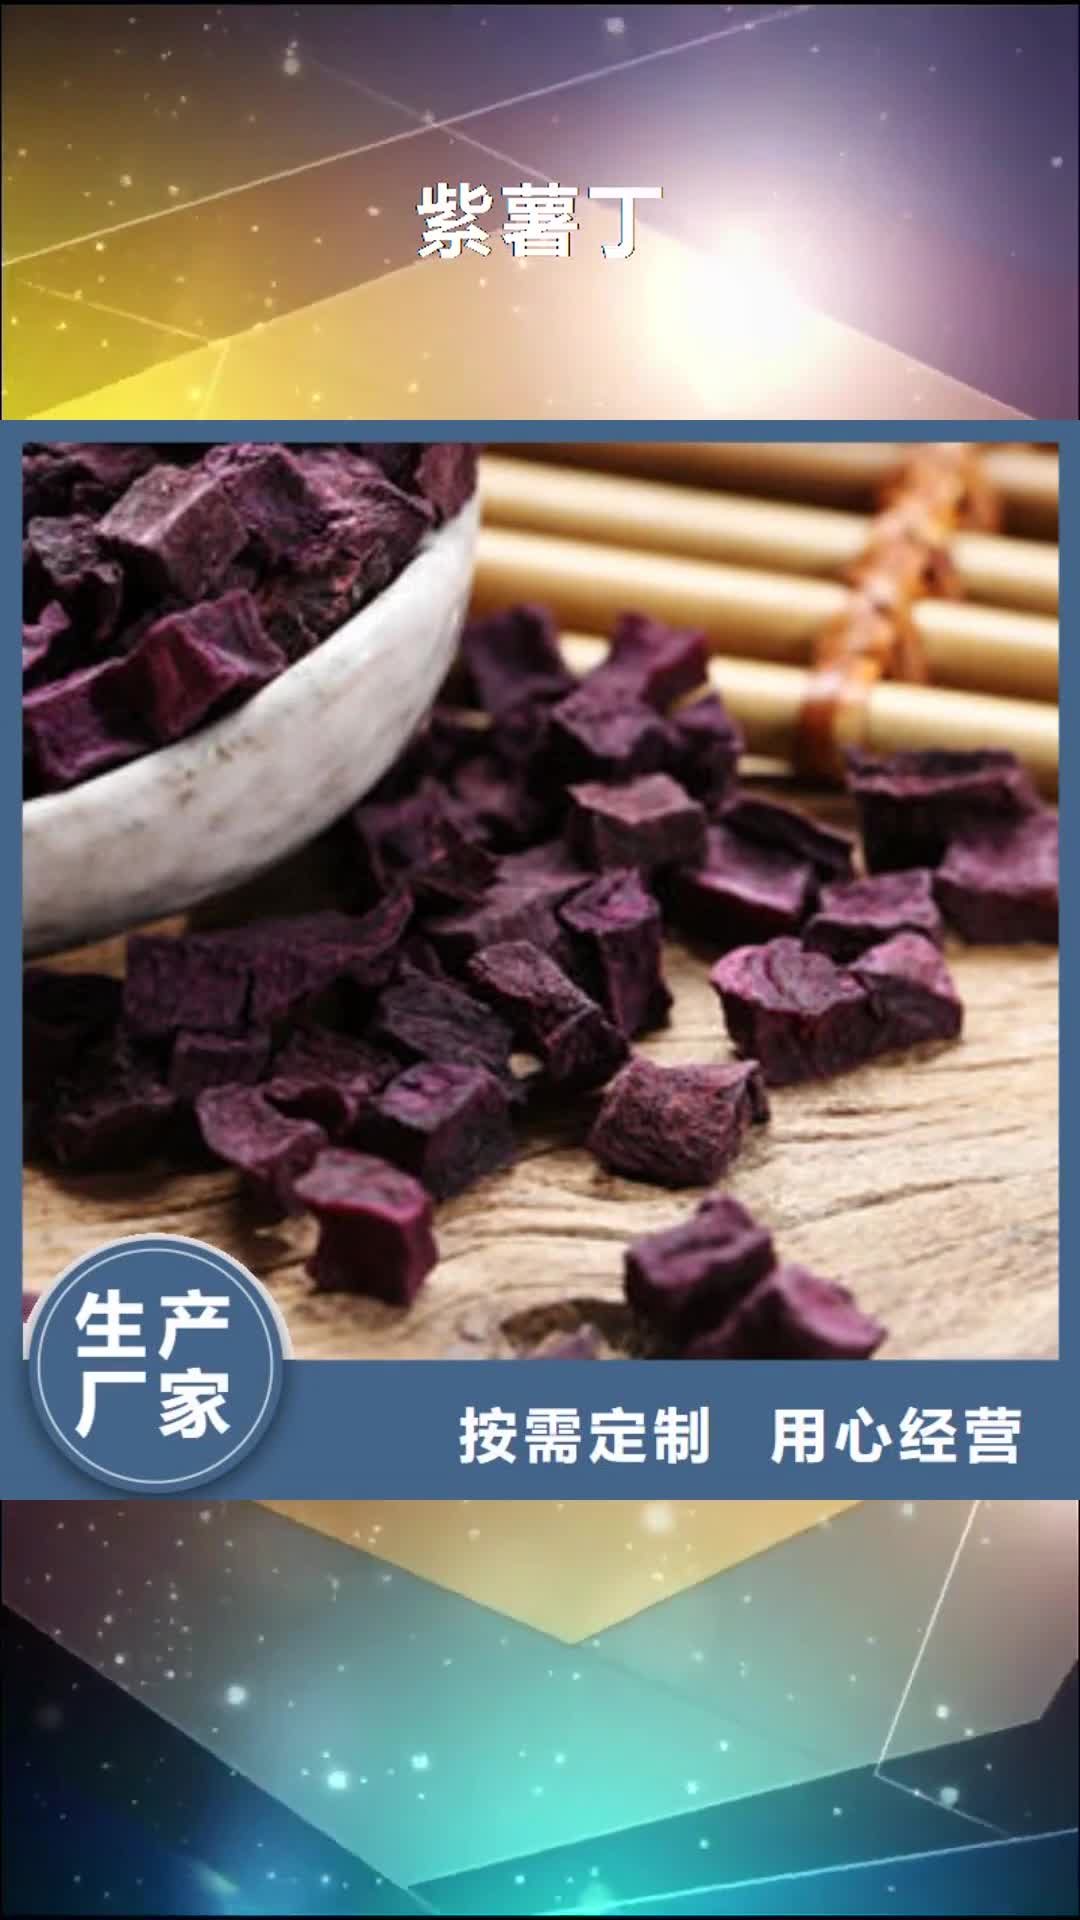 贵港【紫薯丁】,灵芝盆景值得买